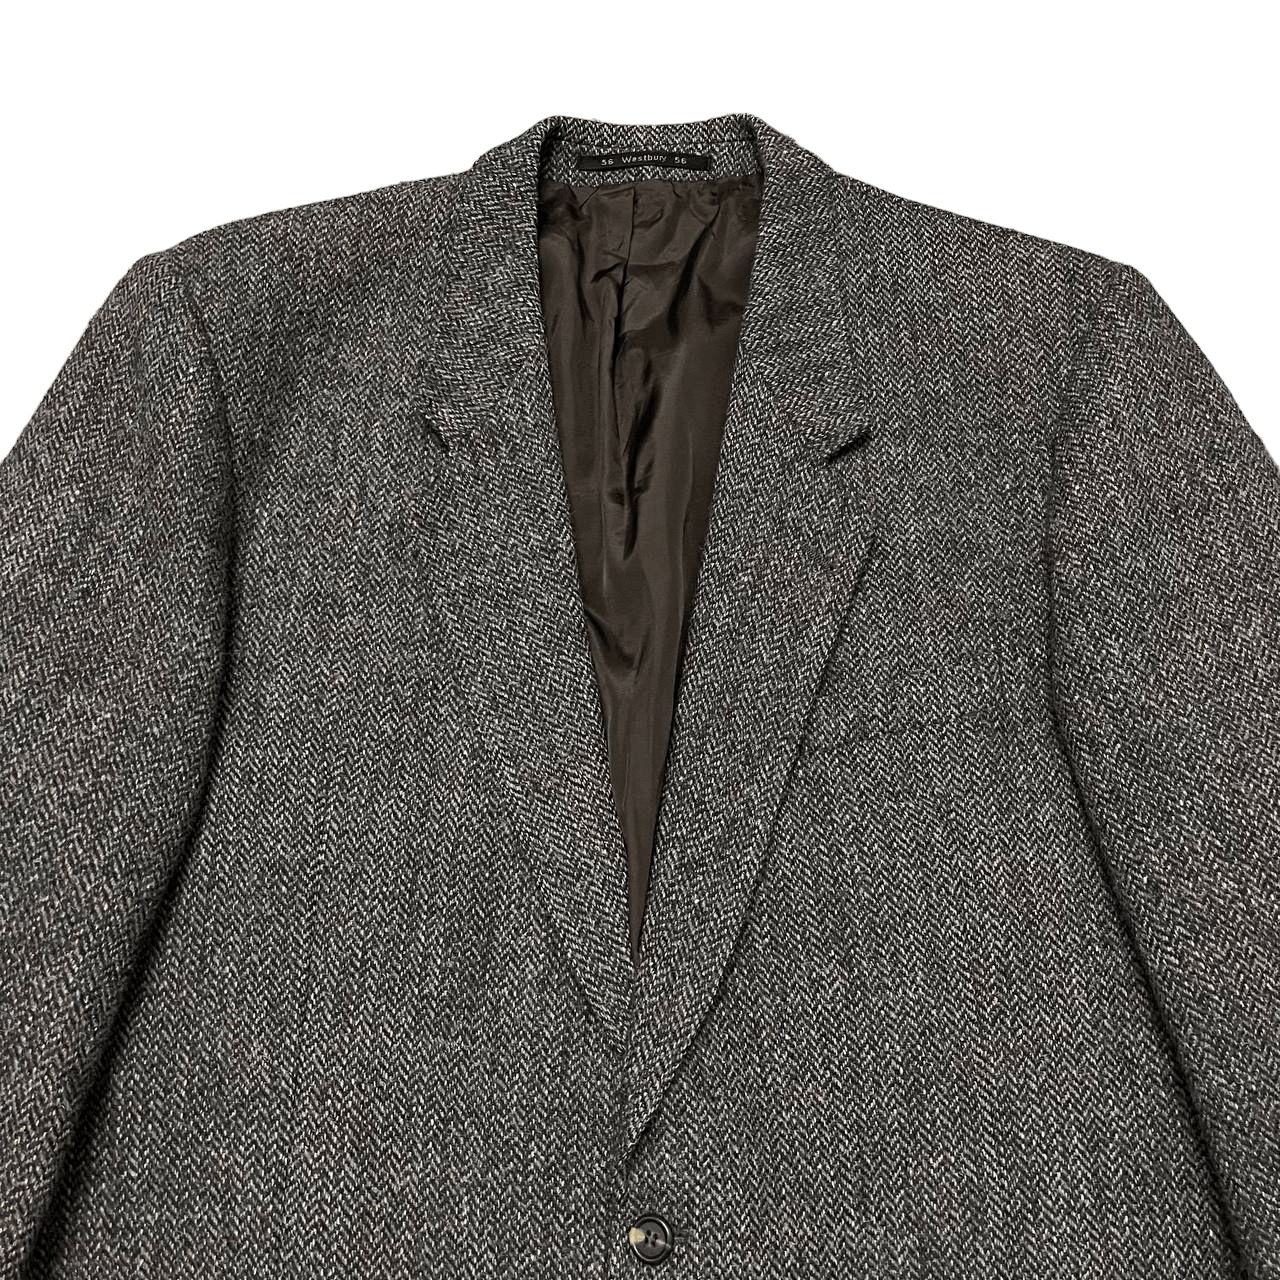 Vintage Harris Tweed x Westbury Wool Coat Jacket - 2